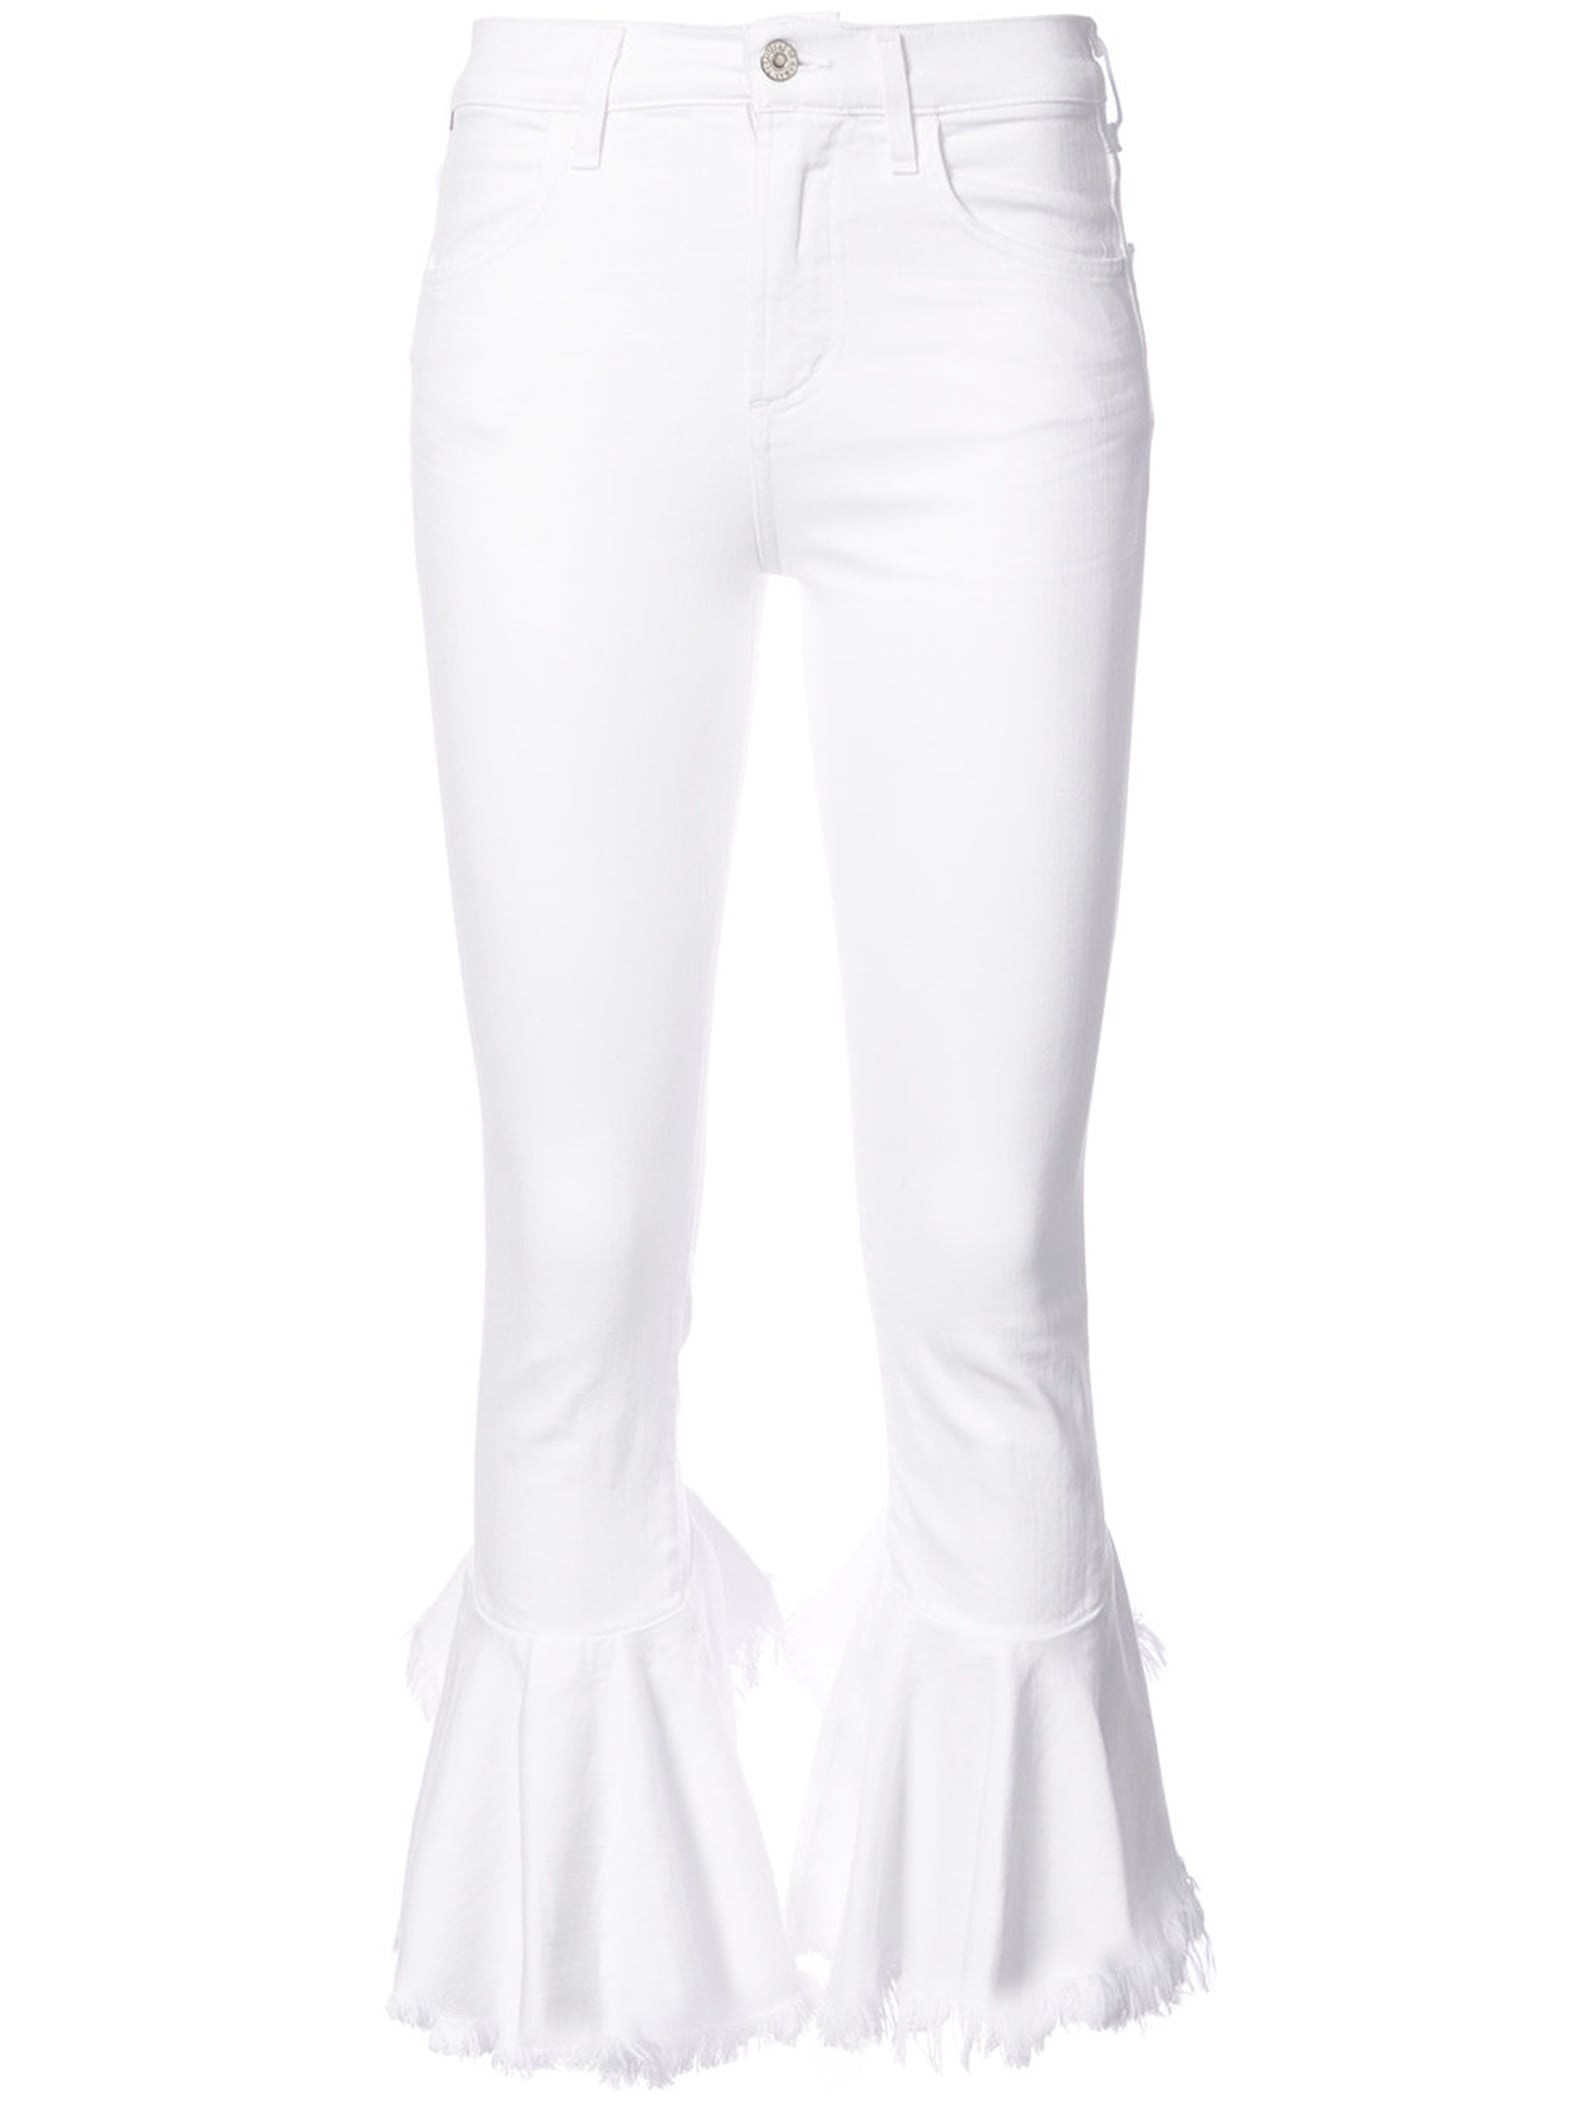 Best White Jeans 2018 | POPSUGAR Fashion